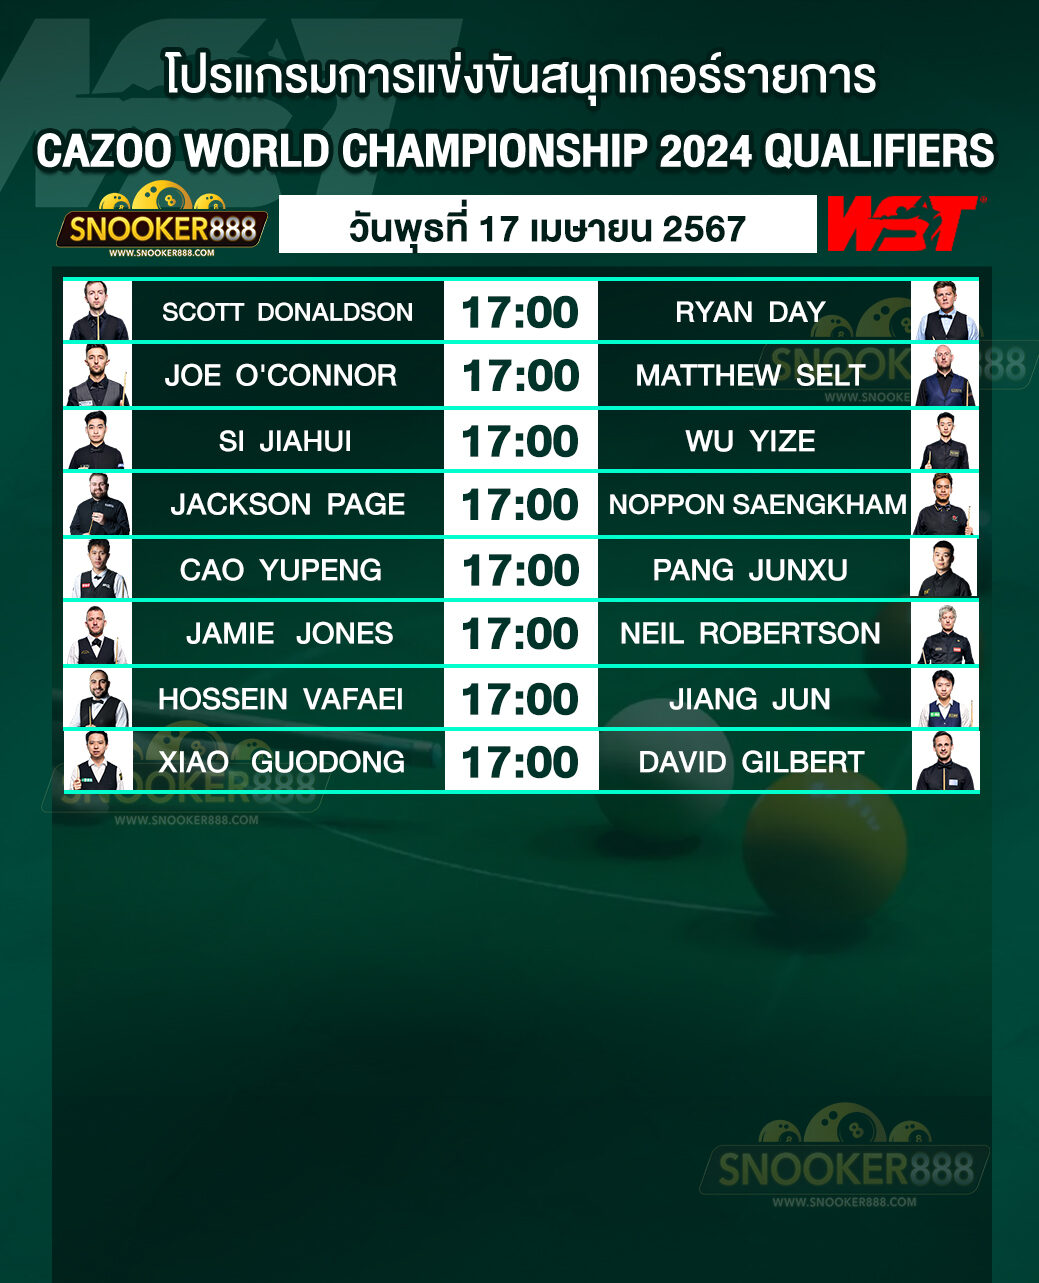 โปรแกรมการแข่งขันสนุกเกอร์ CAZOO WORLD CHAMPIONSHIP 2024 QUALIFIERS วันที่ 17 เม.ย. 67